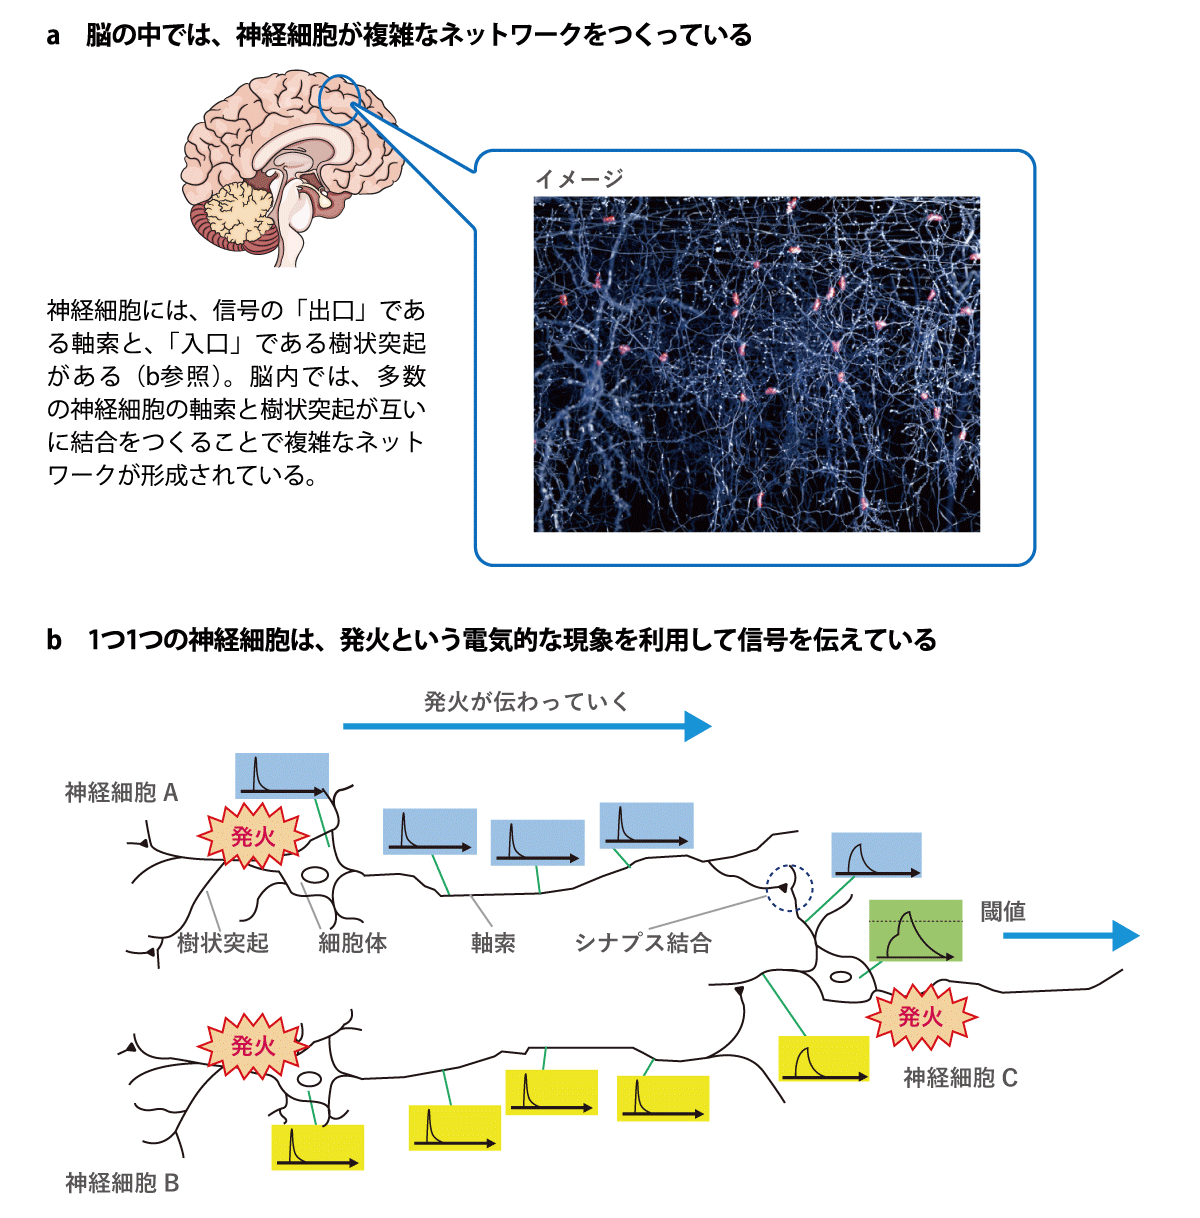 図1 神経細胞のネットワーク（a）と 細胞間の信号伝達のしくみ（b）